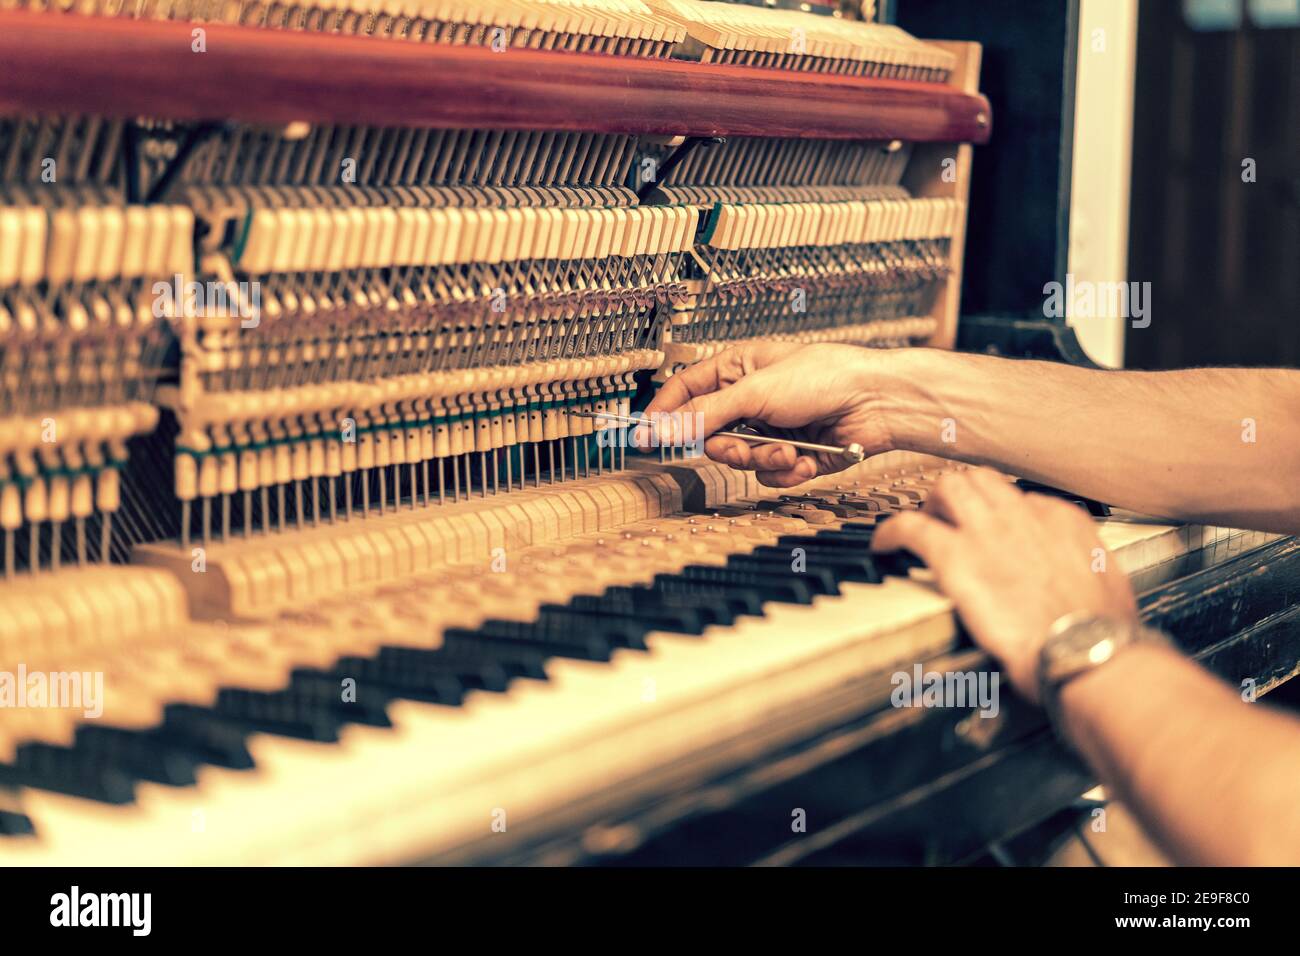 Configurando un piano viejo. El maestro repara un viejo piano. Limpieza  profunda del piano. Toned Fotografía de stock - Alamy